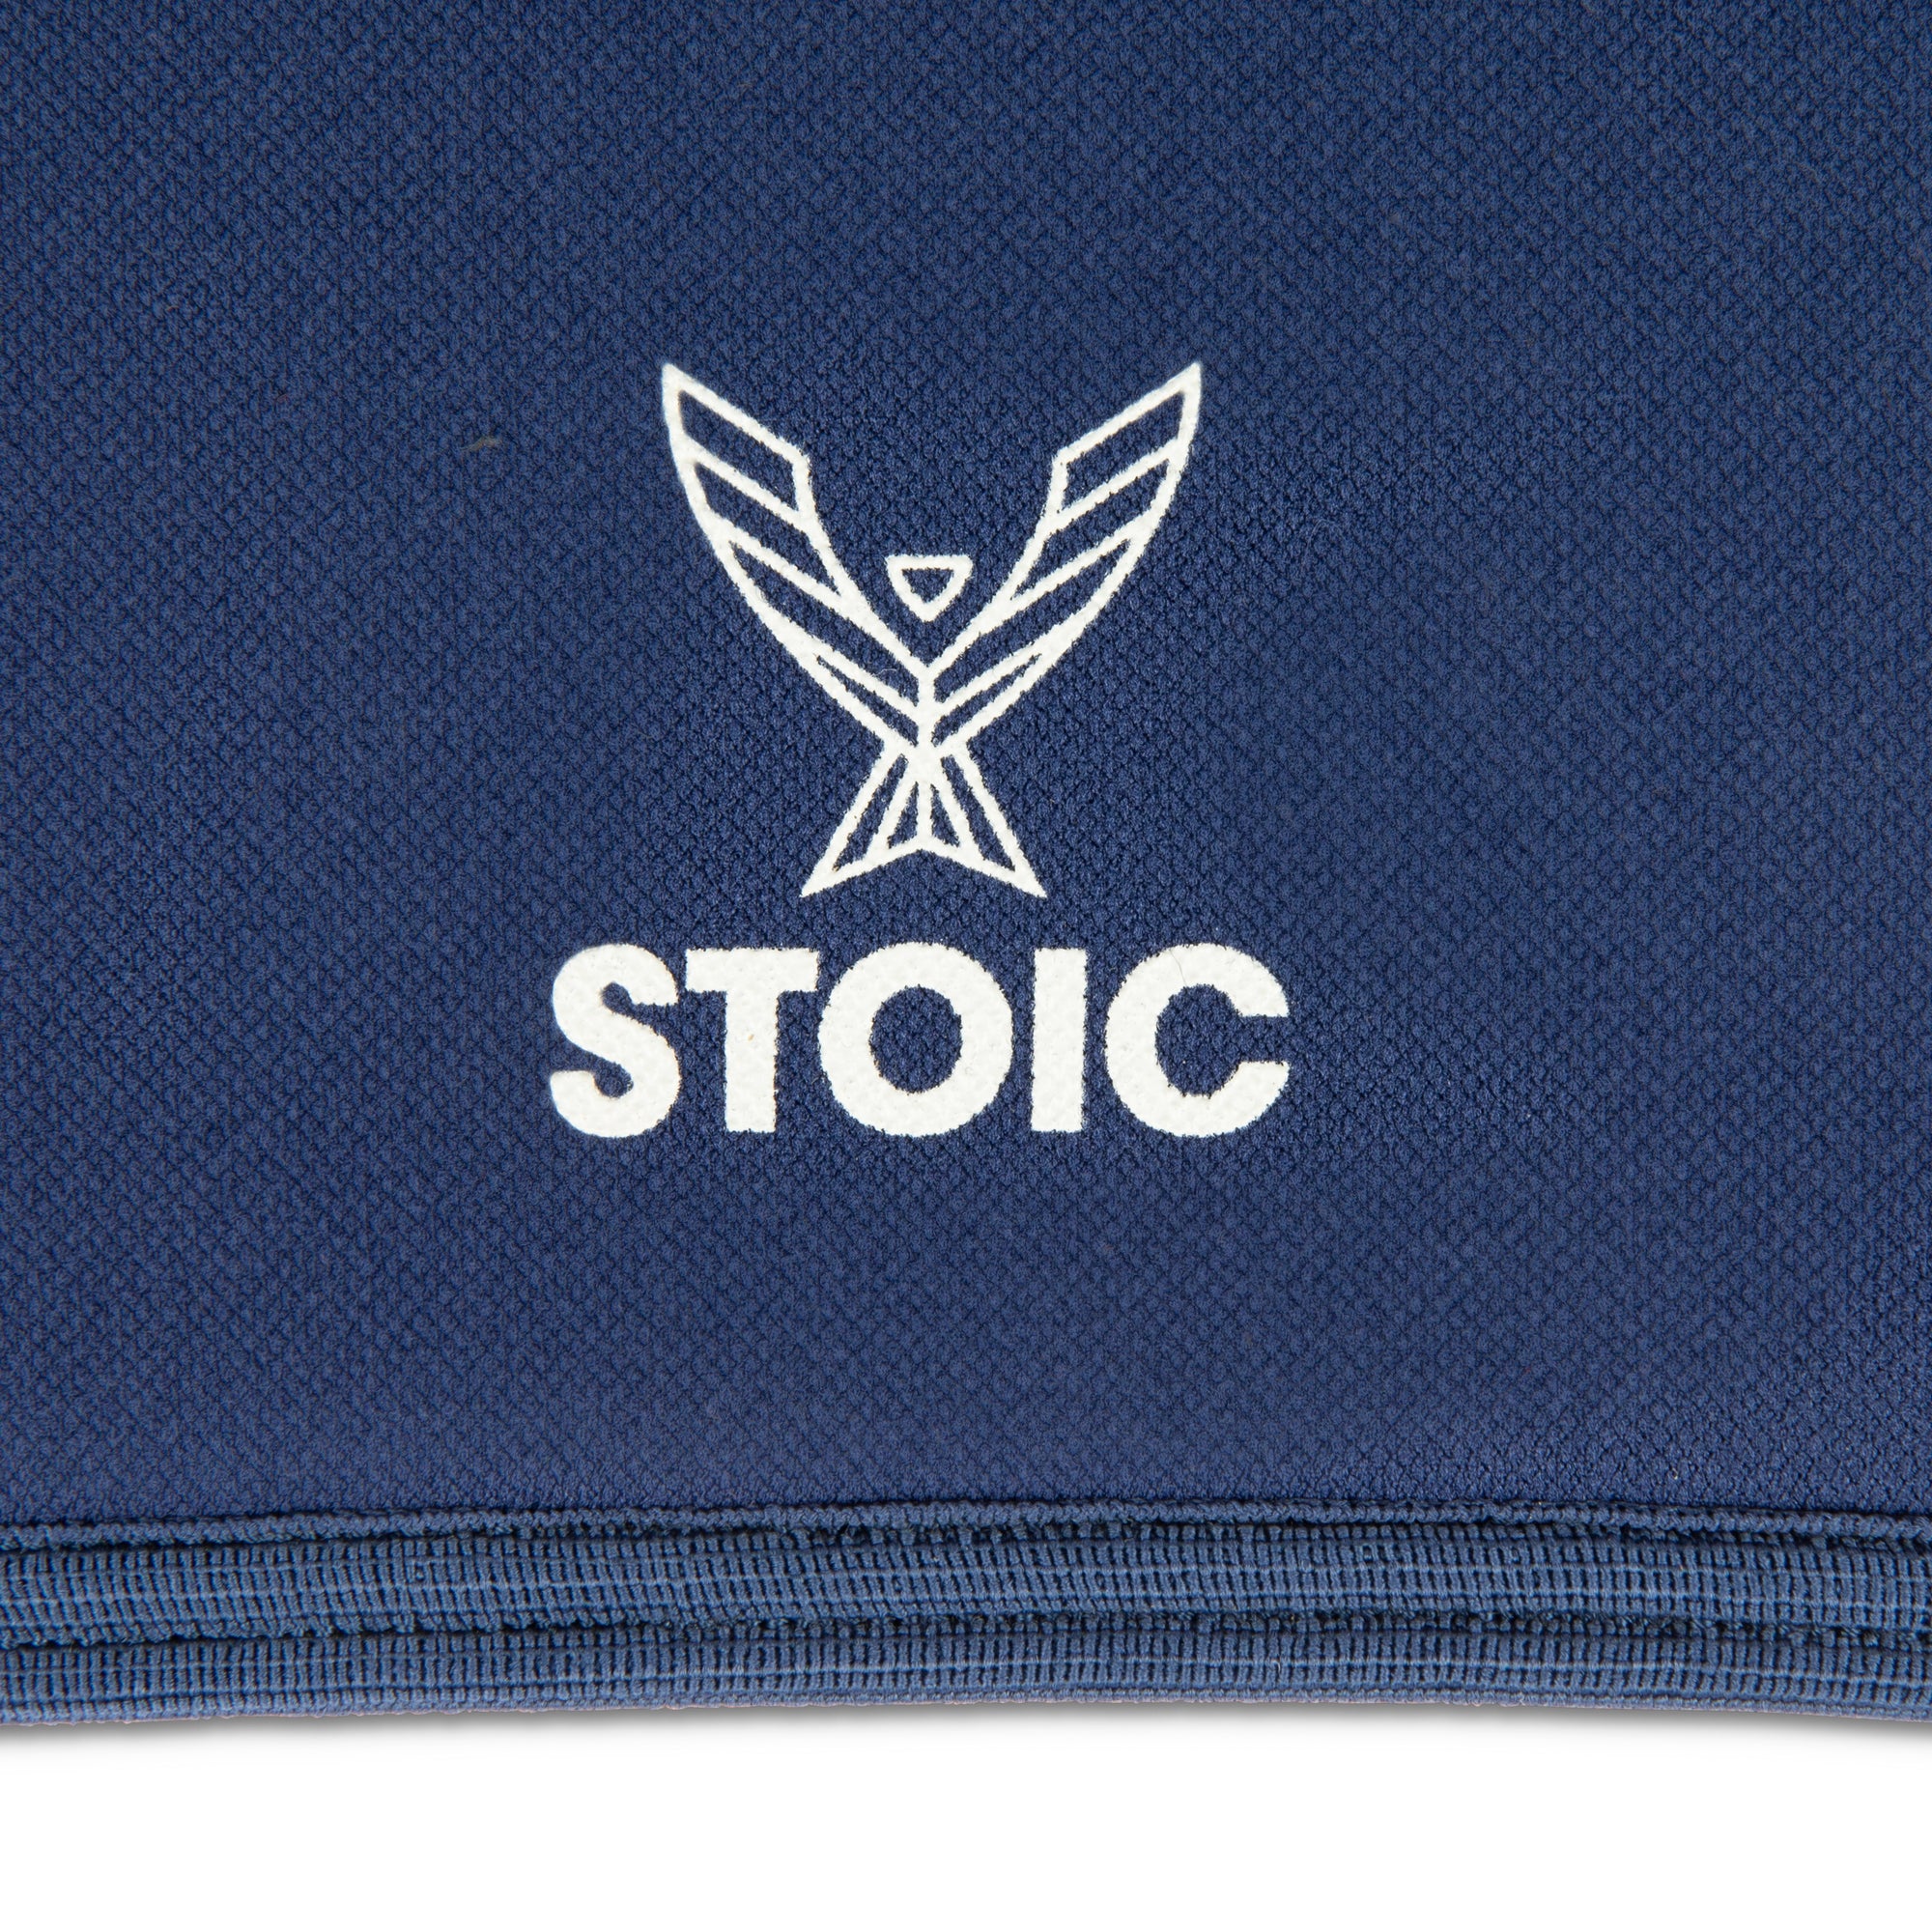 Stoic Knee Sleeves - Navy